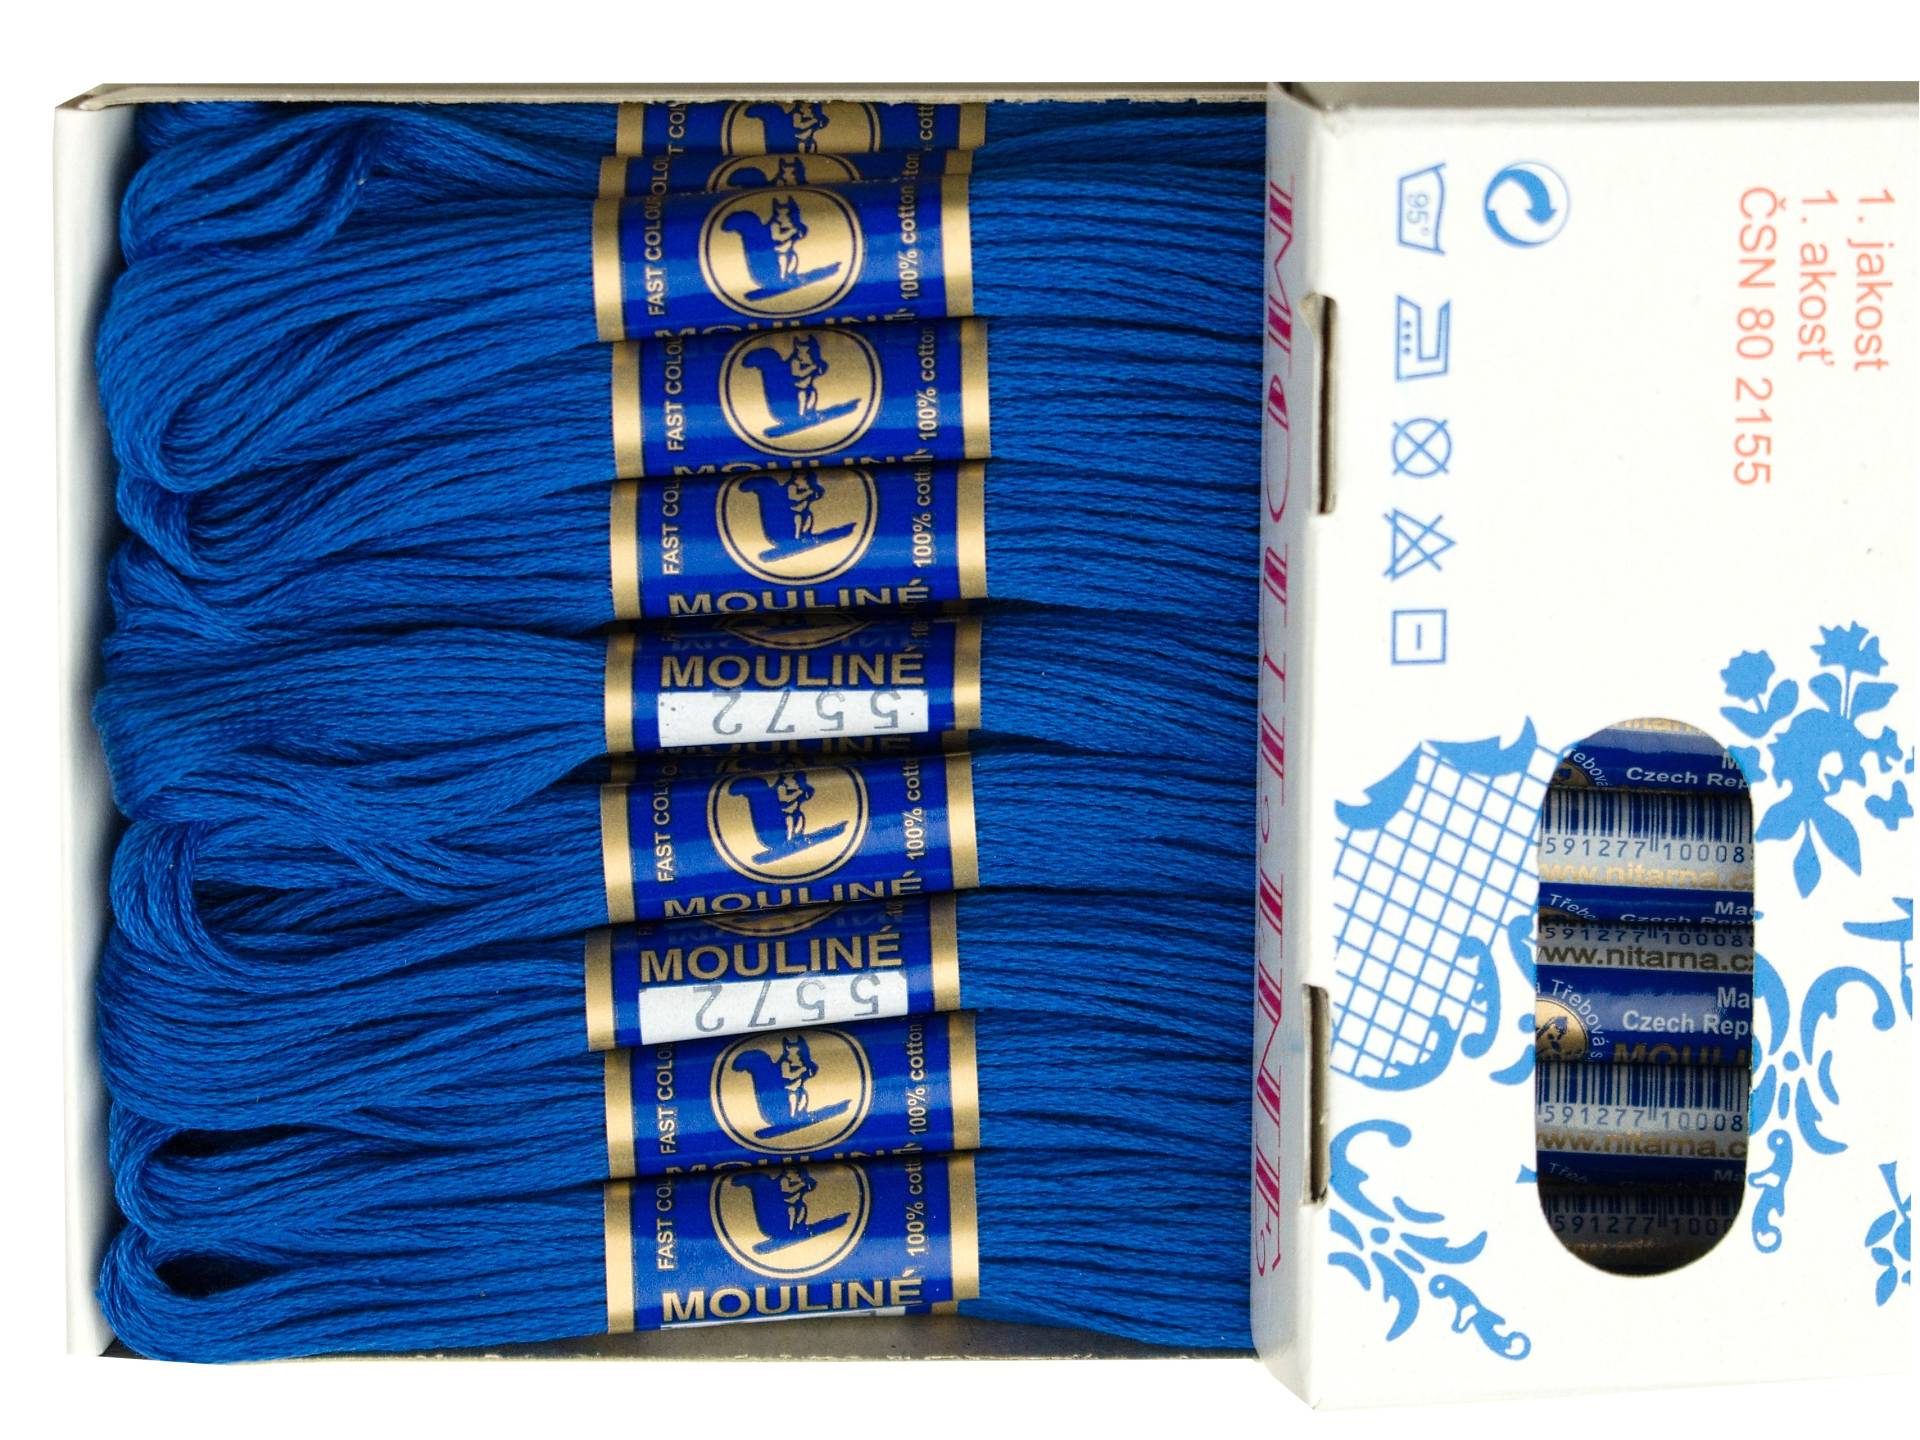 Bavlněná vyšívací příze Mouline královská modř (5572)